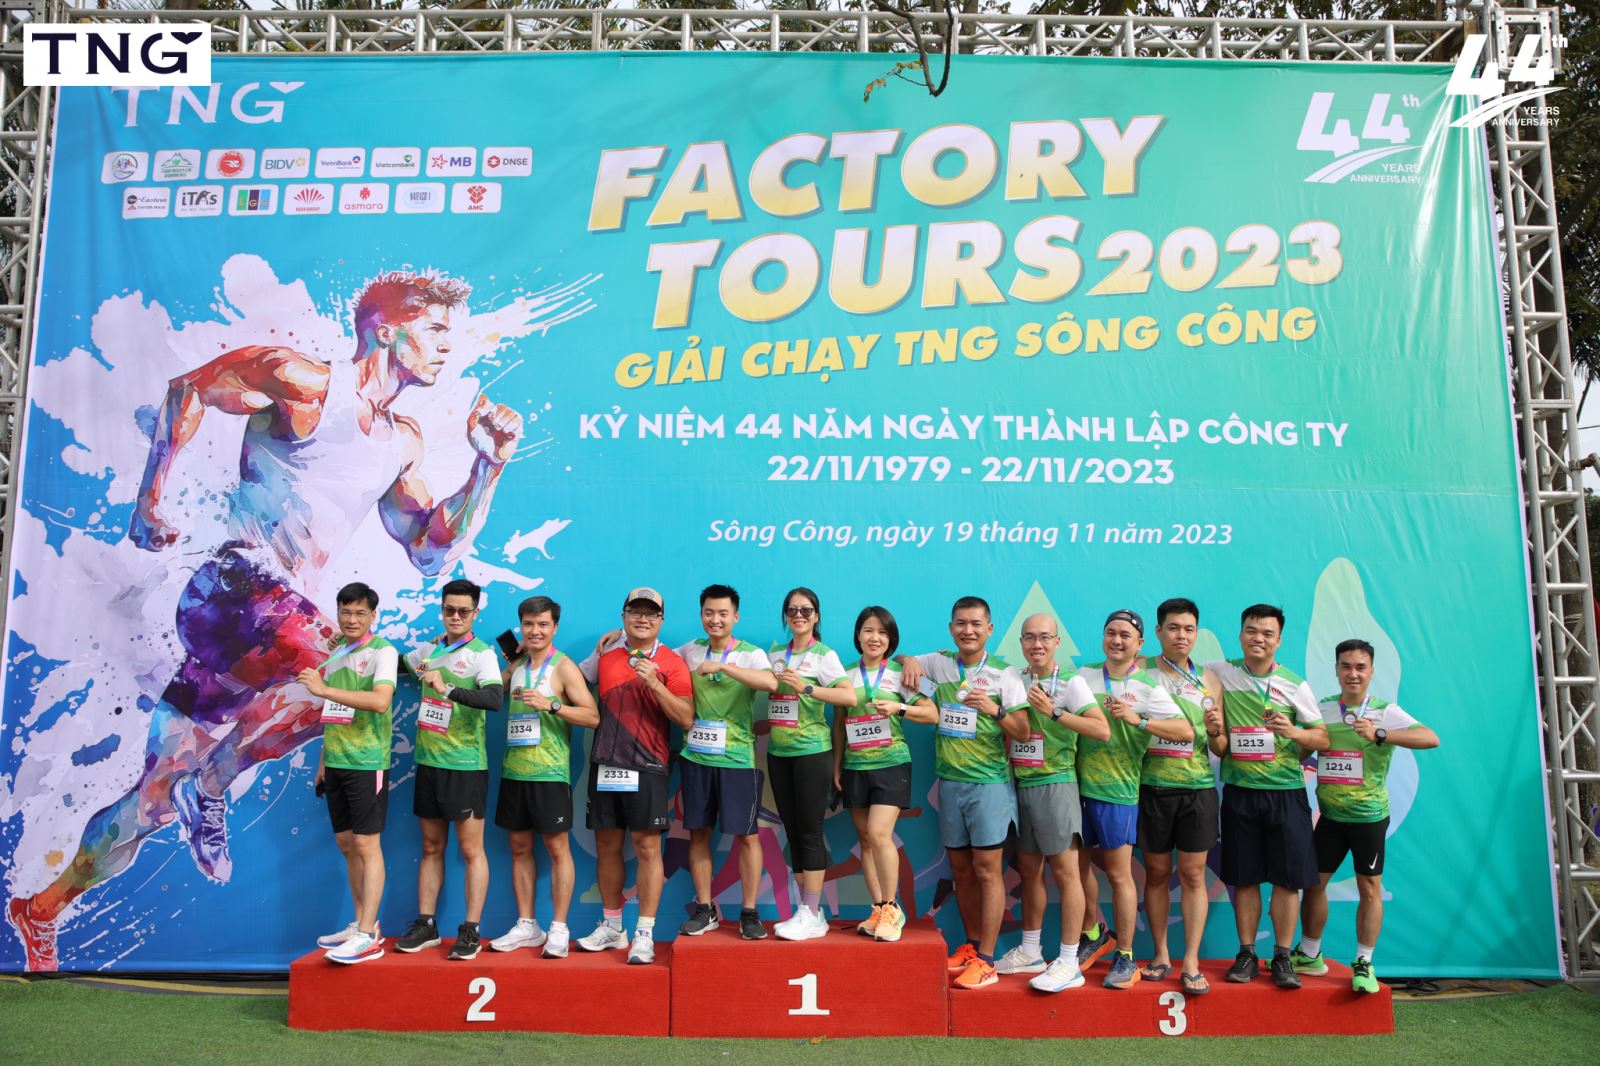 CLB Hà Đô Runners tham dự giải chạy TNG Sông Công Factory Tours 2023